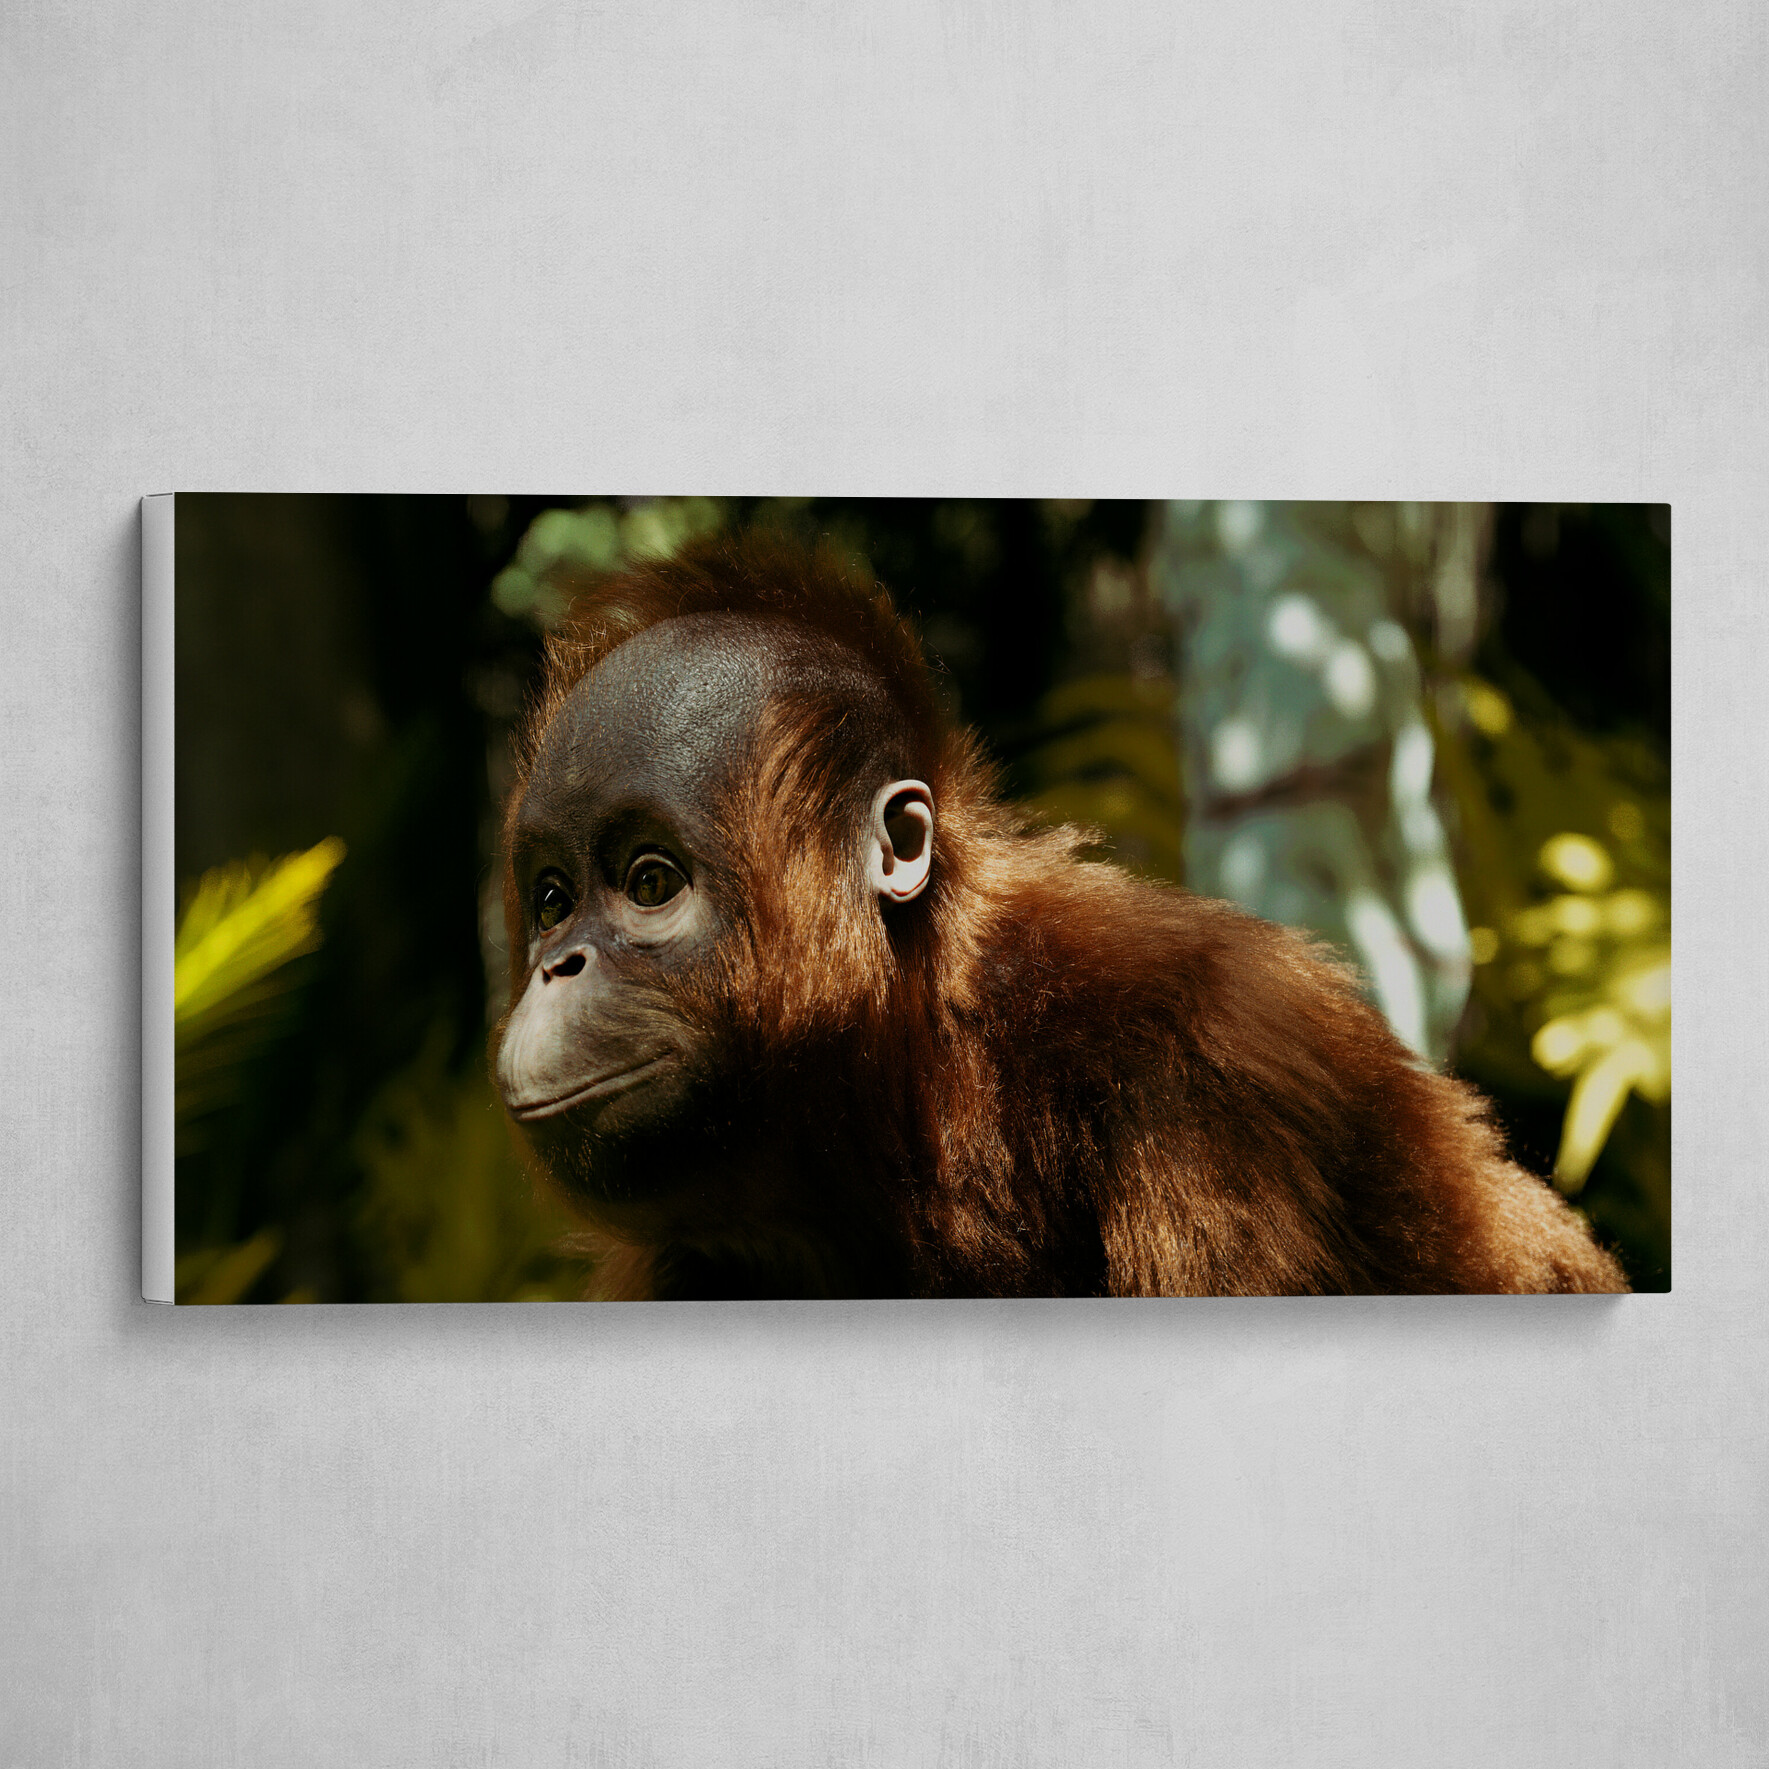 Boro- the Orangutan